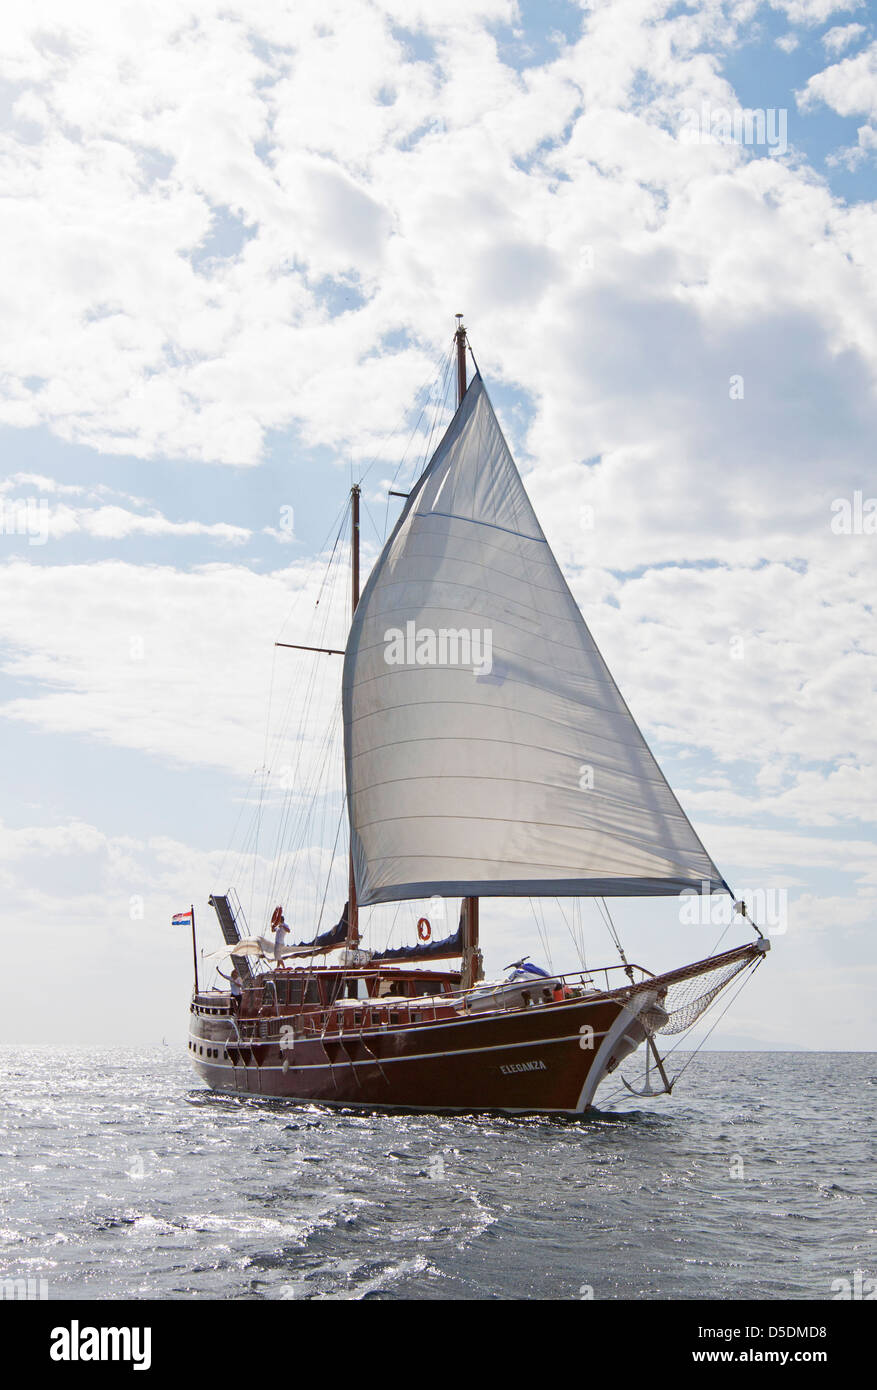 Eine traditionelle Holzschiff namens eine türkischen Gulet mit seinen Segeln, Segeln auf dem Mittelmeer an einem sonnigen Taghimmel Wolken. Stockfoto